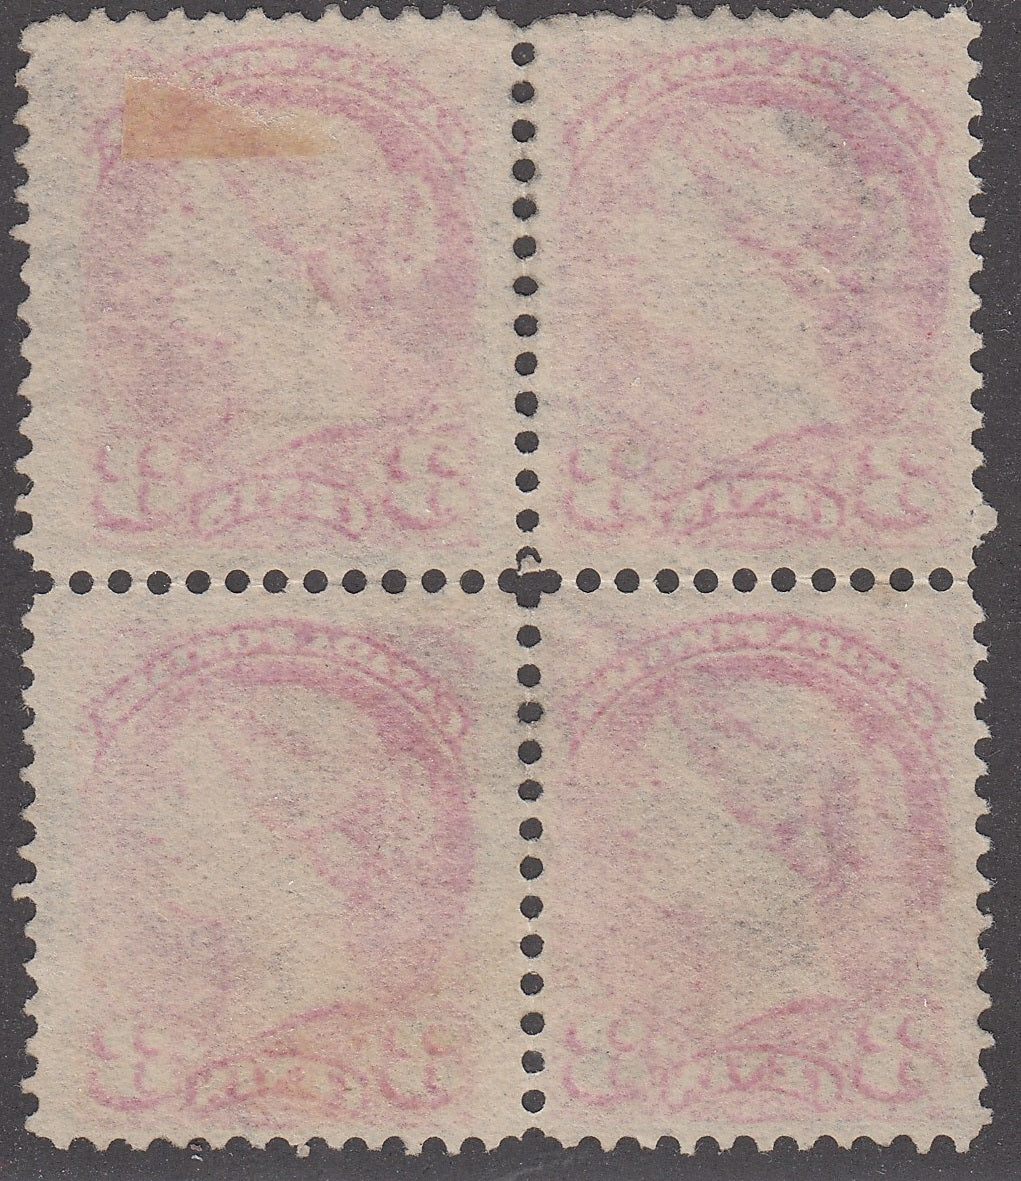 0041CA2205 - Canada #41, Used Block of 4